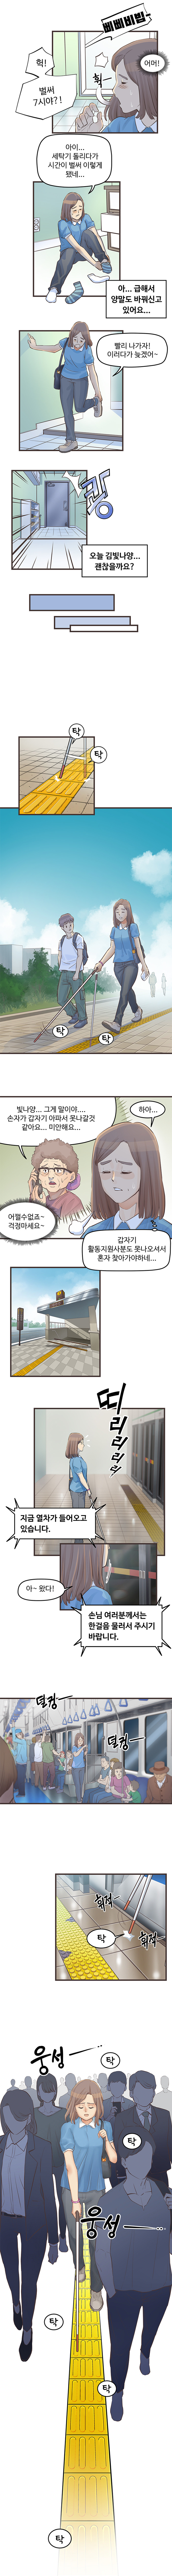 중증시각장애인 김빛나 웹툰 3화. 원고는 하단을 참조하세요.